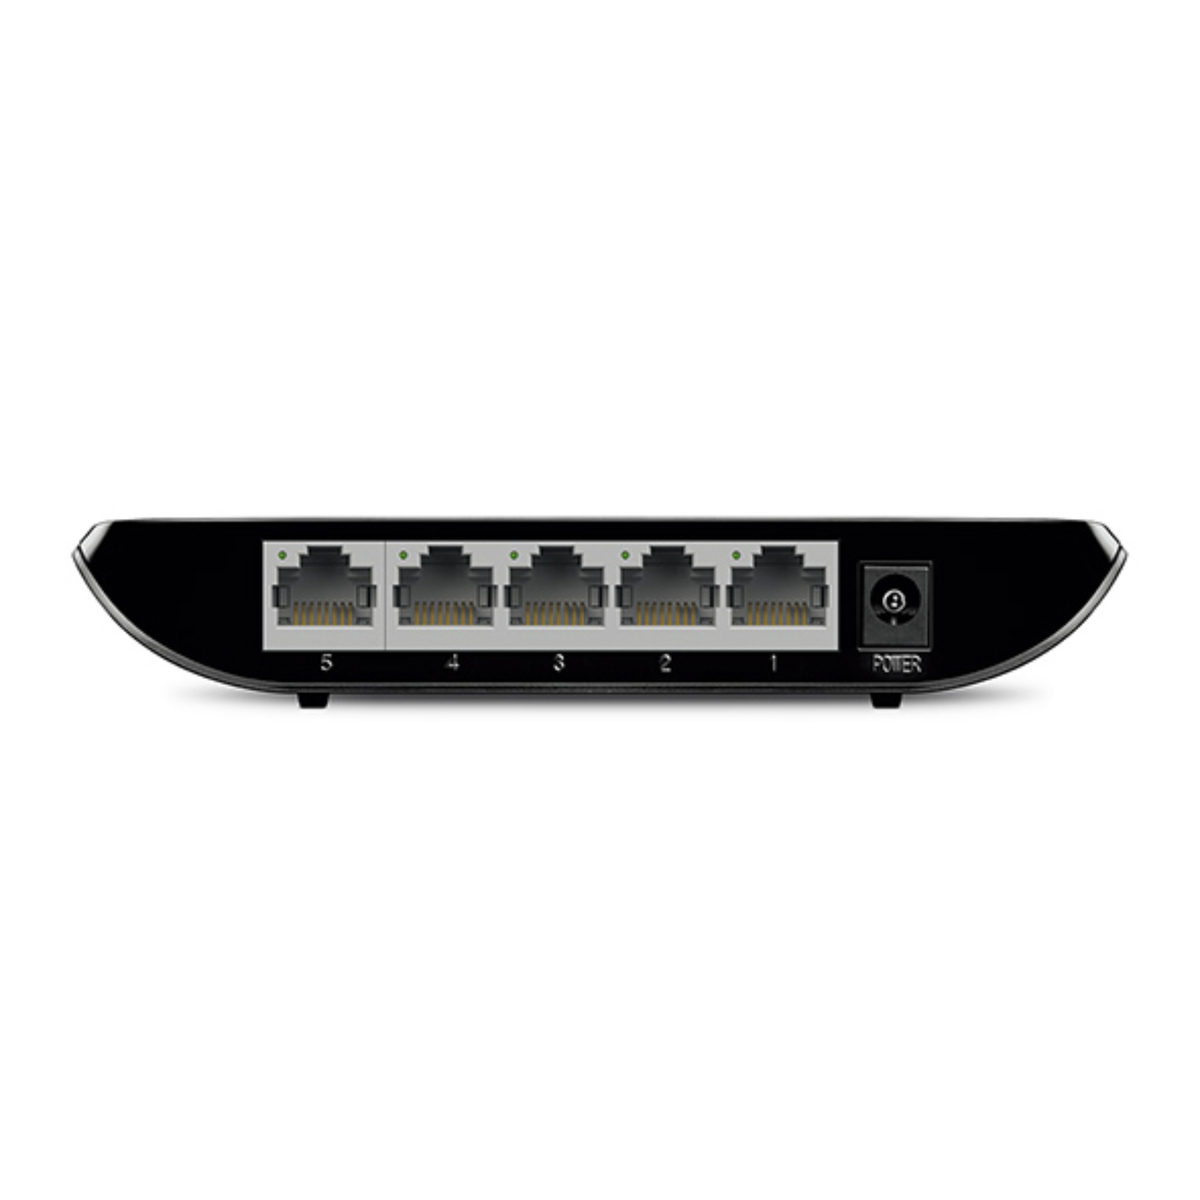 TP-Link 5-Port Gigabit Desktop Switch, Black, TL-SG1005D